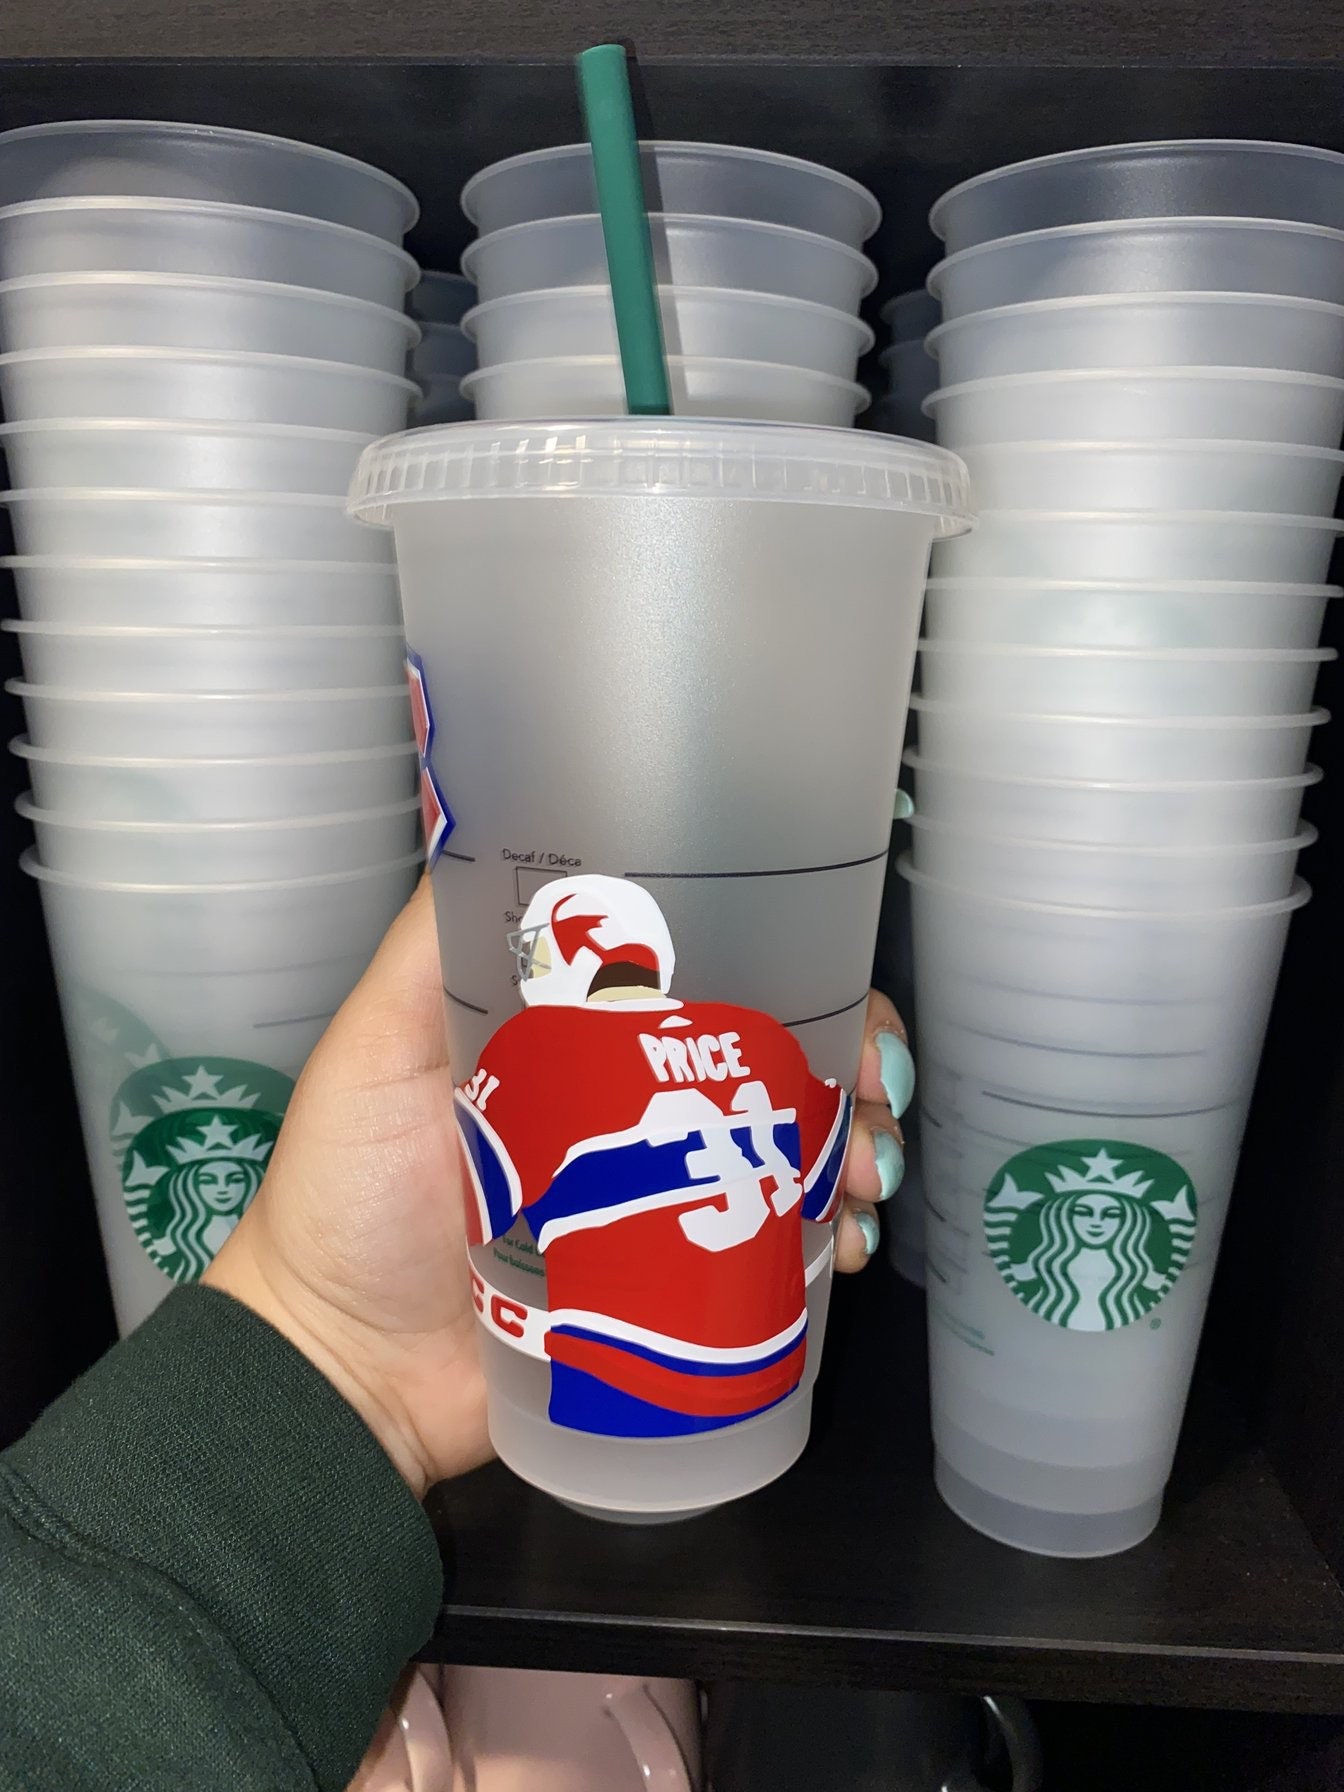 Voici un aperçu des tasses des Fêtes de Starbucks - Starbucks Canada French